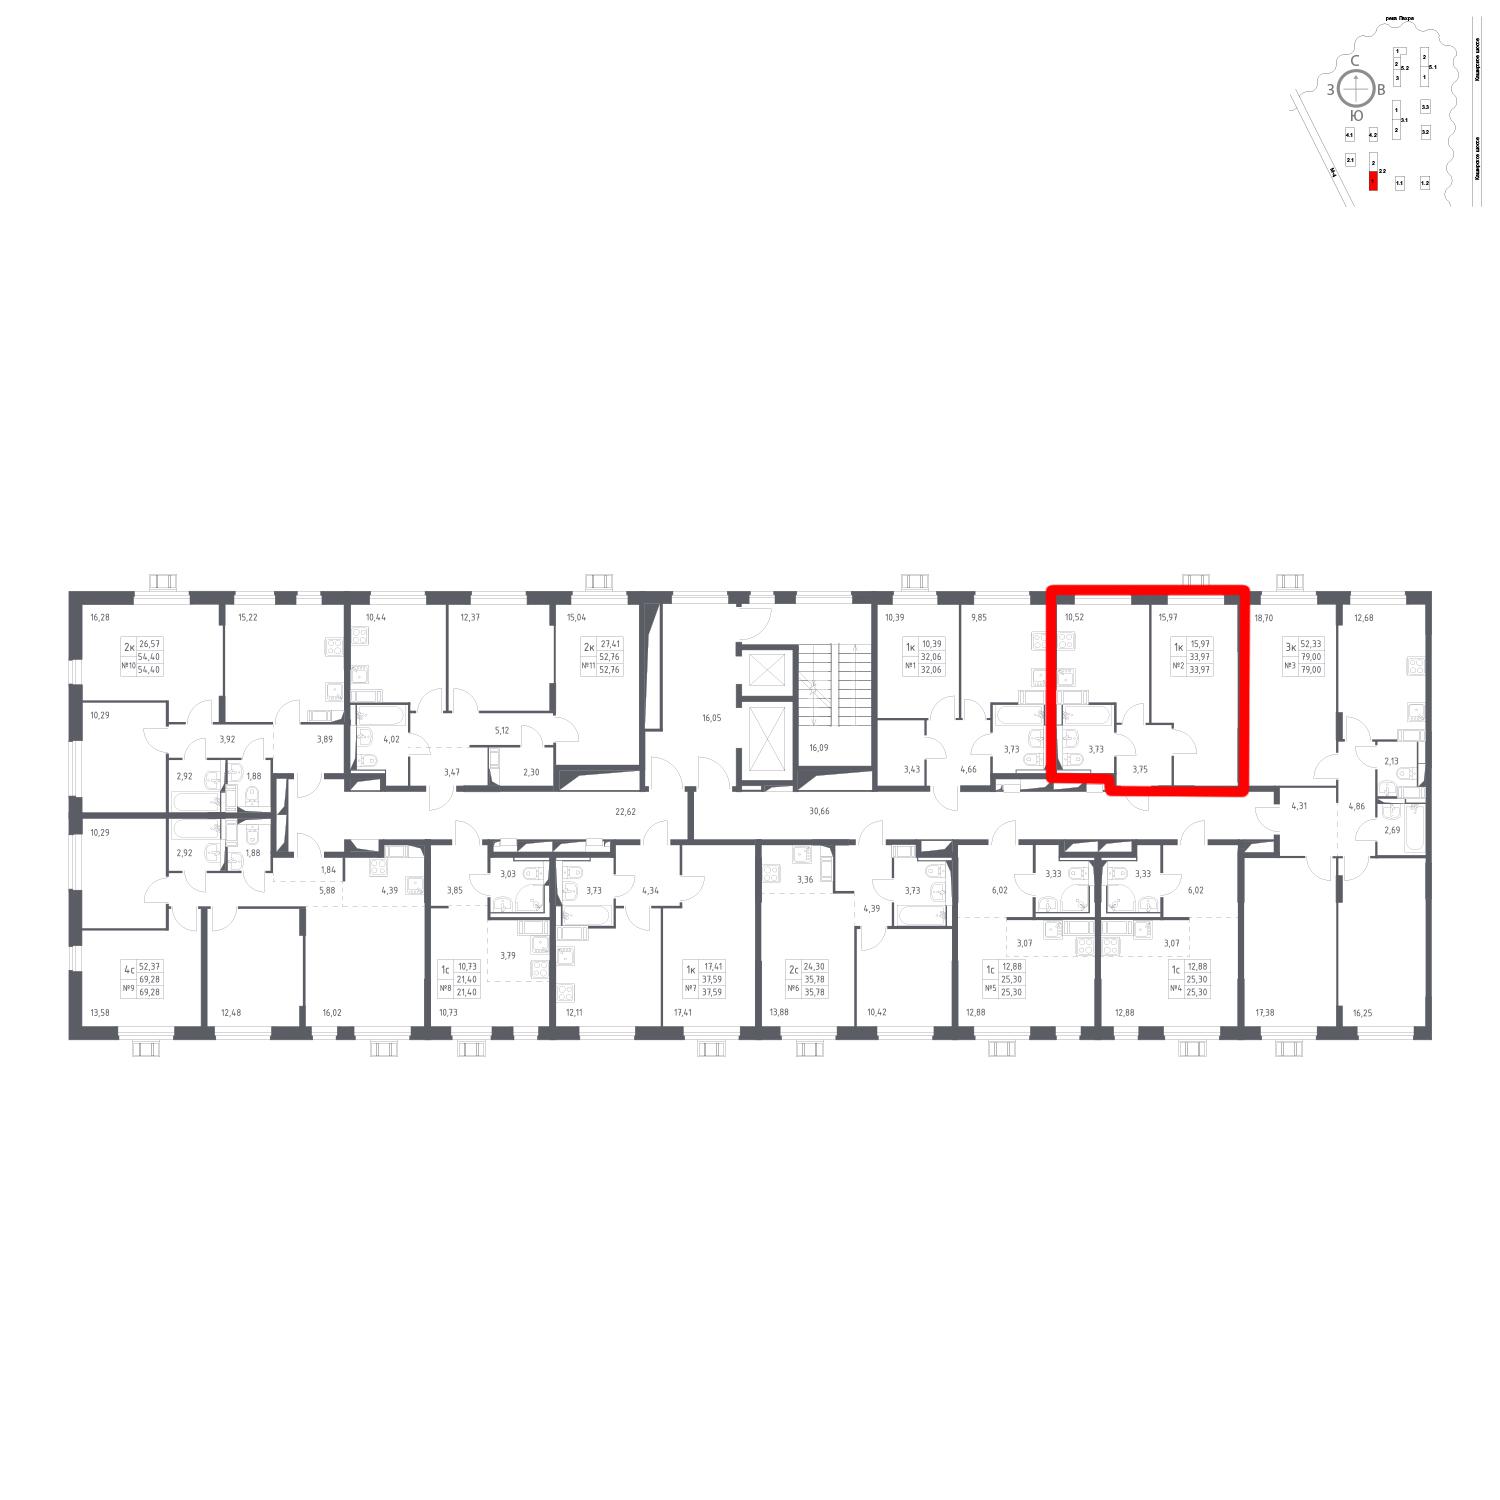 Продаётся 1-комнатная квартира в новостройке 34.0 кв.м. этаж 12/17 за 6 121 537 руб 